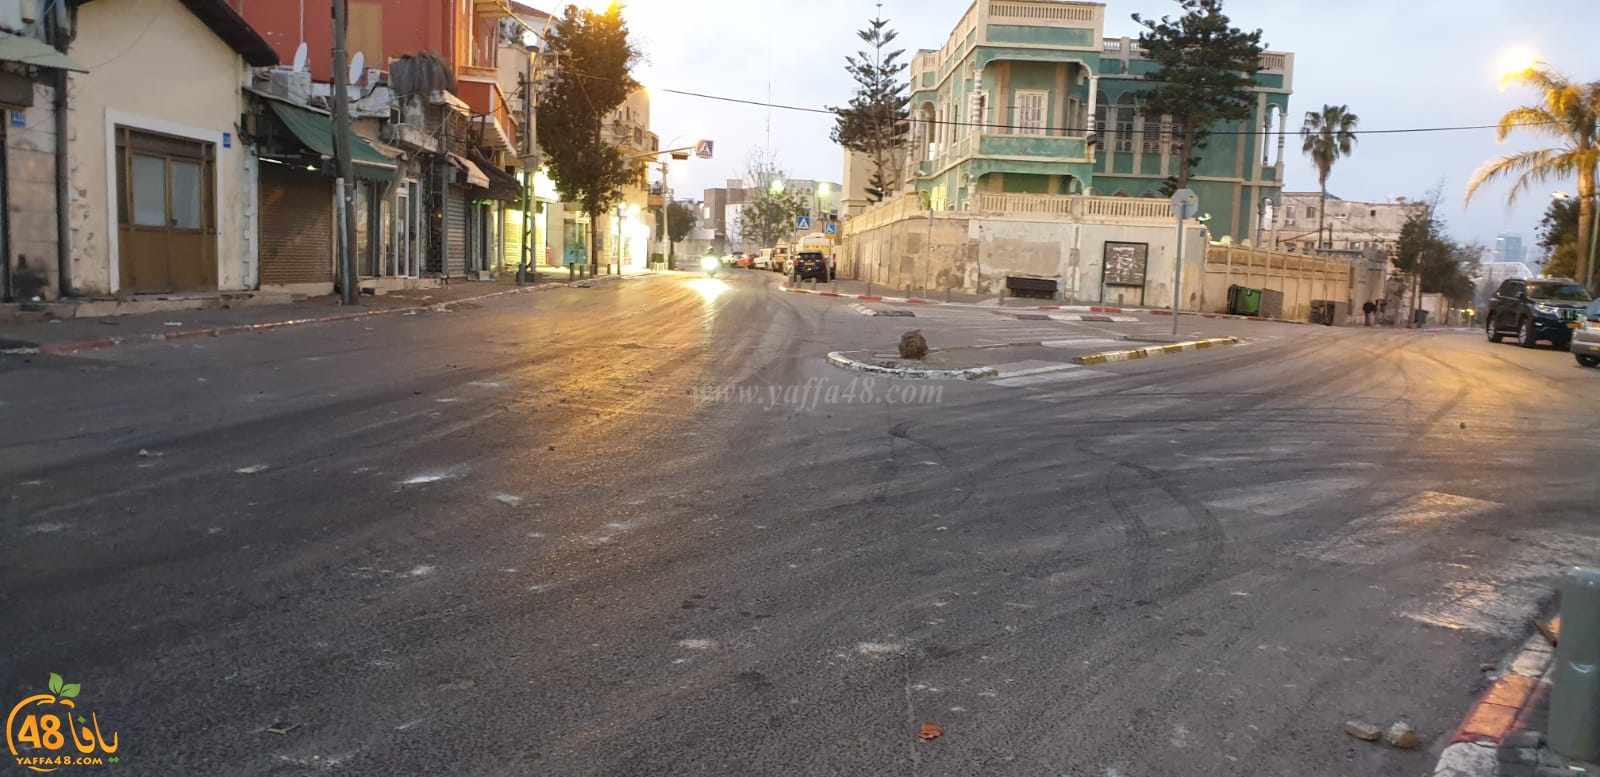  هدوء حذر يخيّم على أجواء مدينة يافا بعد مواجهات بين الشرطة والشبان 